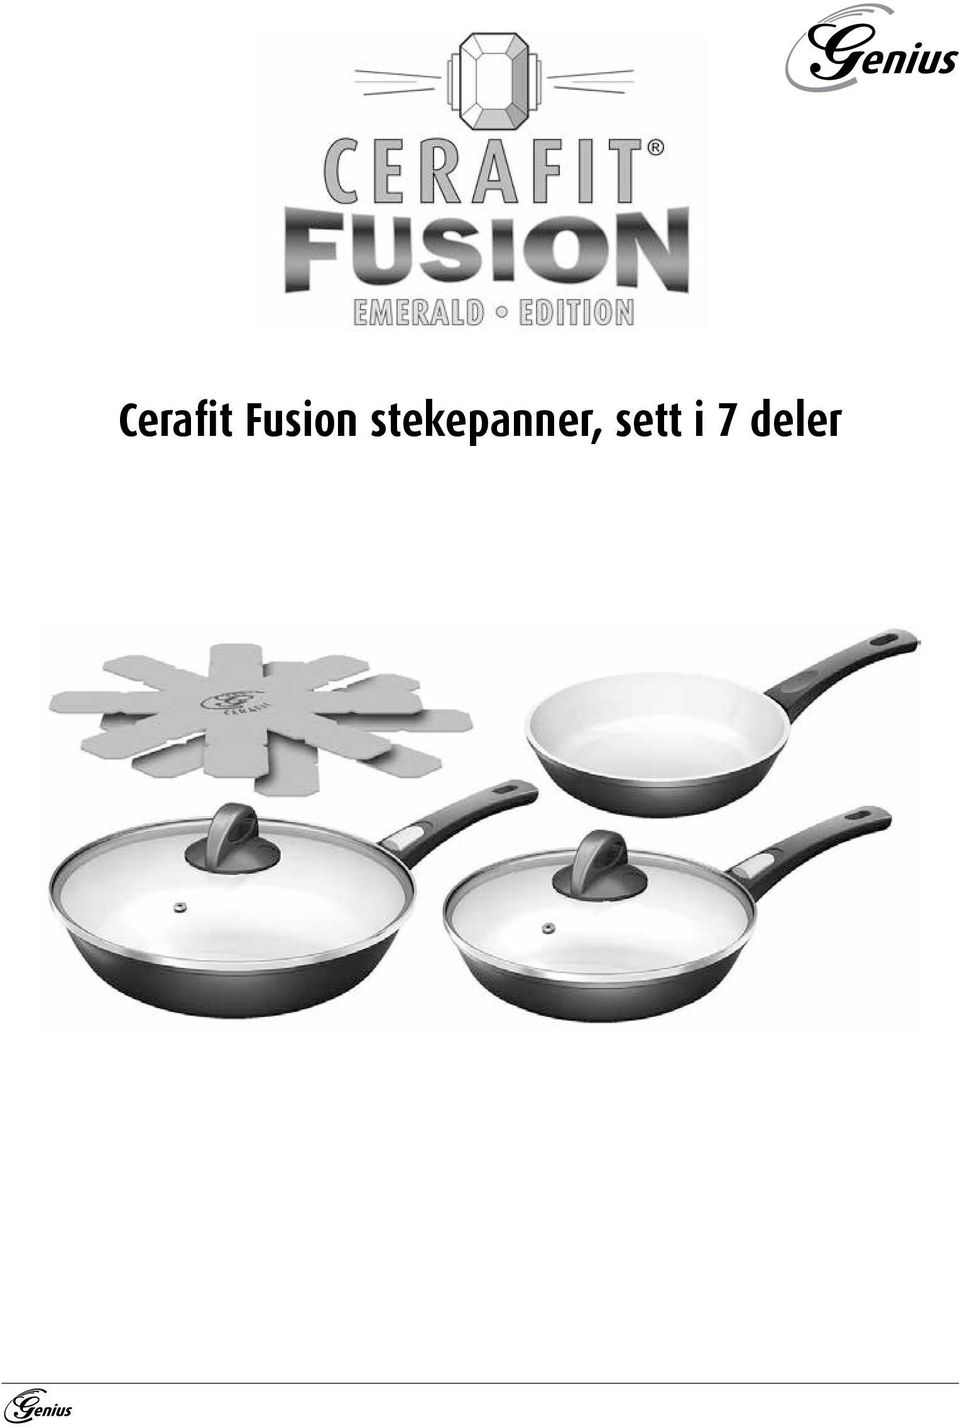 Cerafit Fusion stekepanner, sett i 7 deler - PDF Free Download